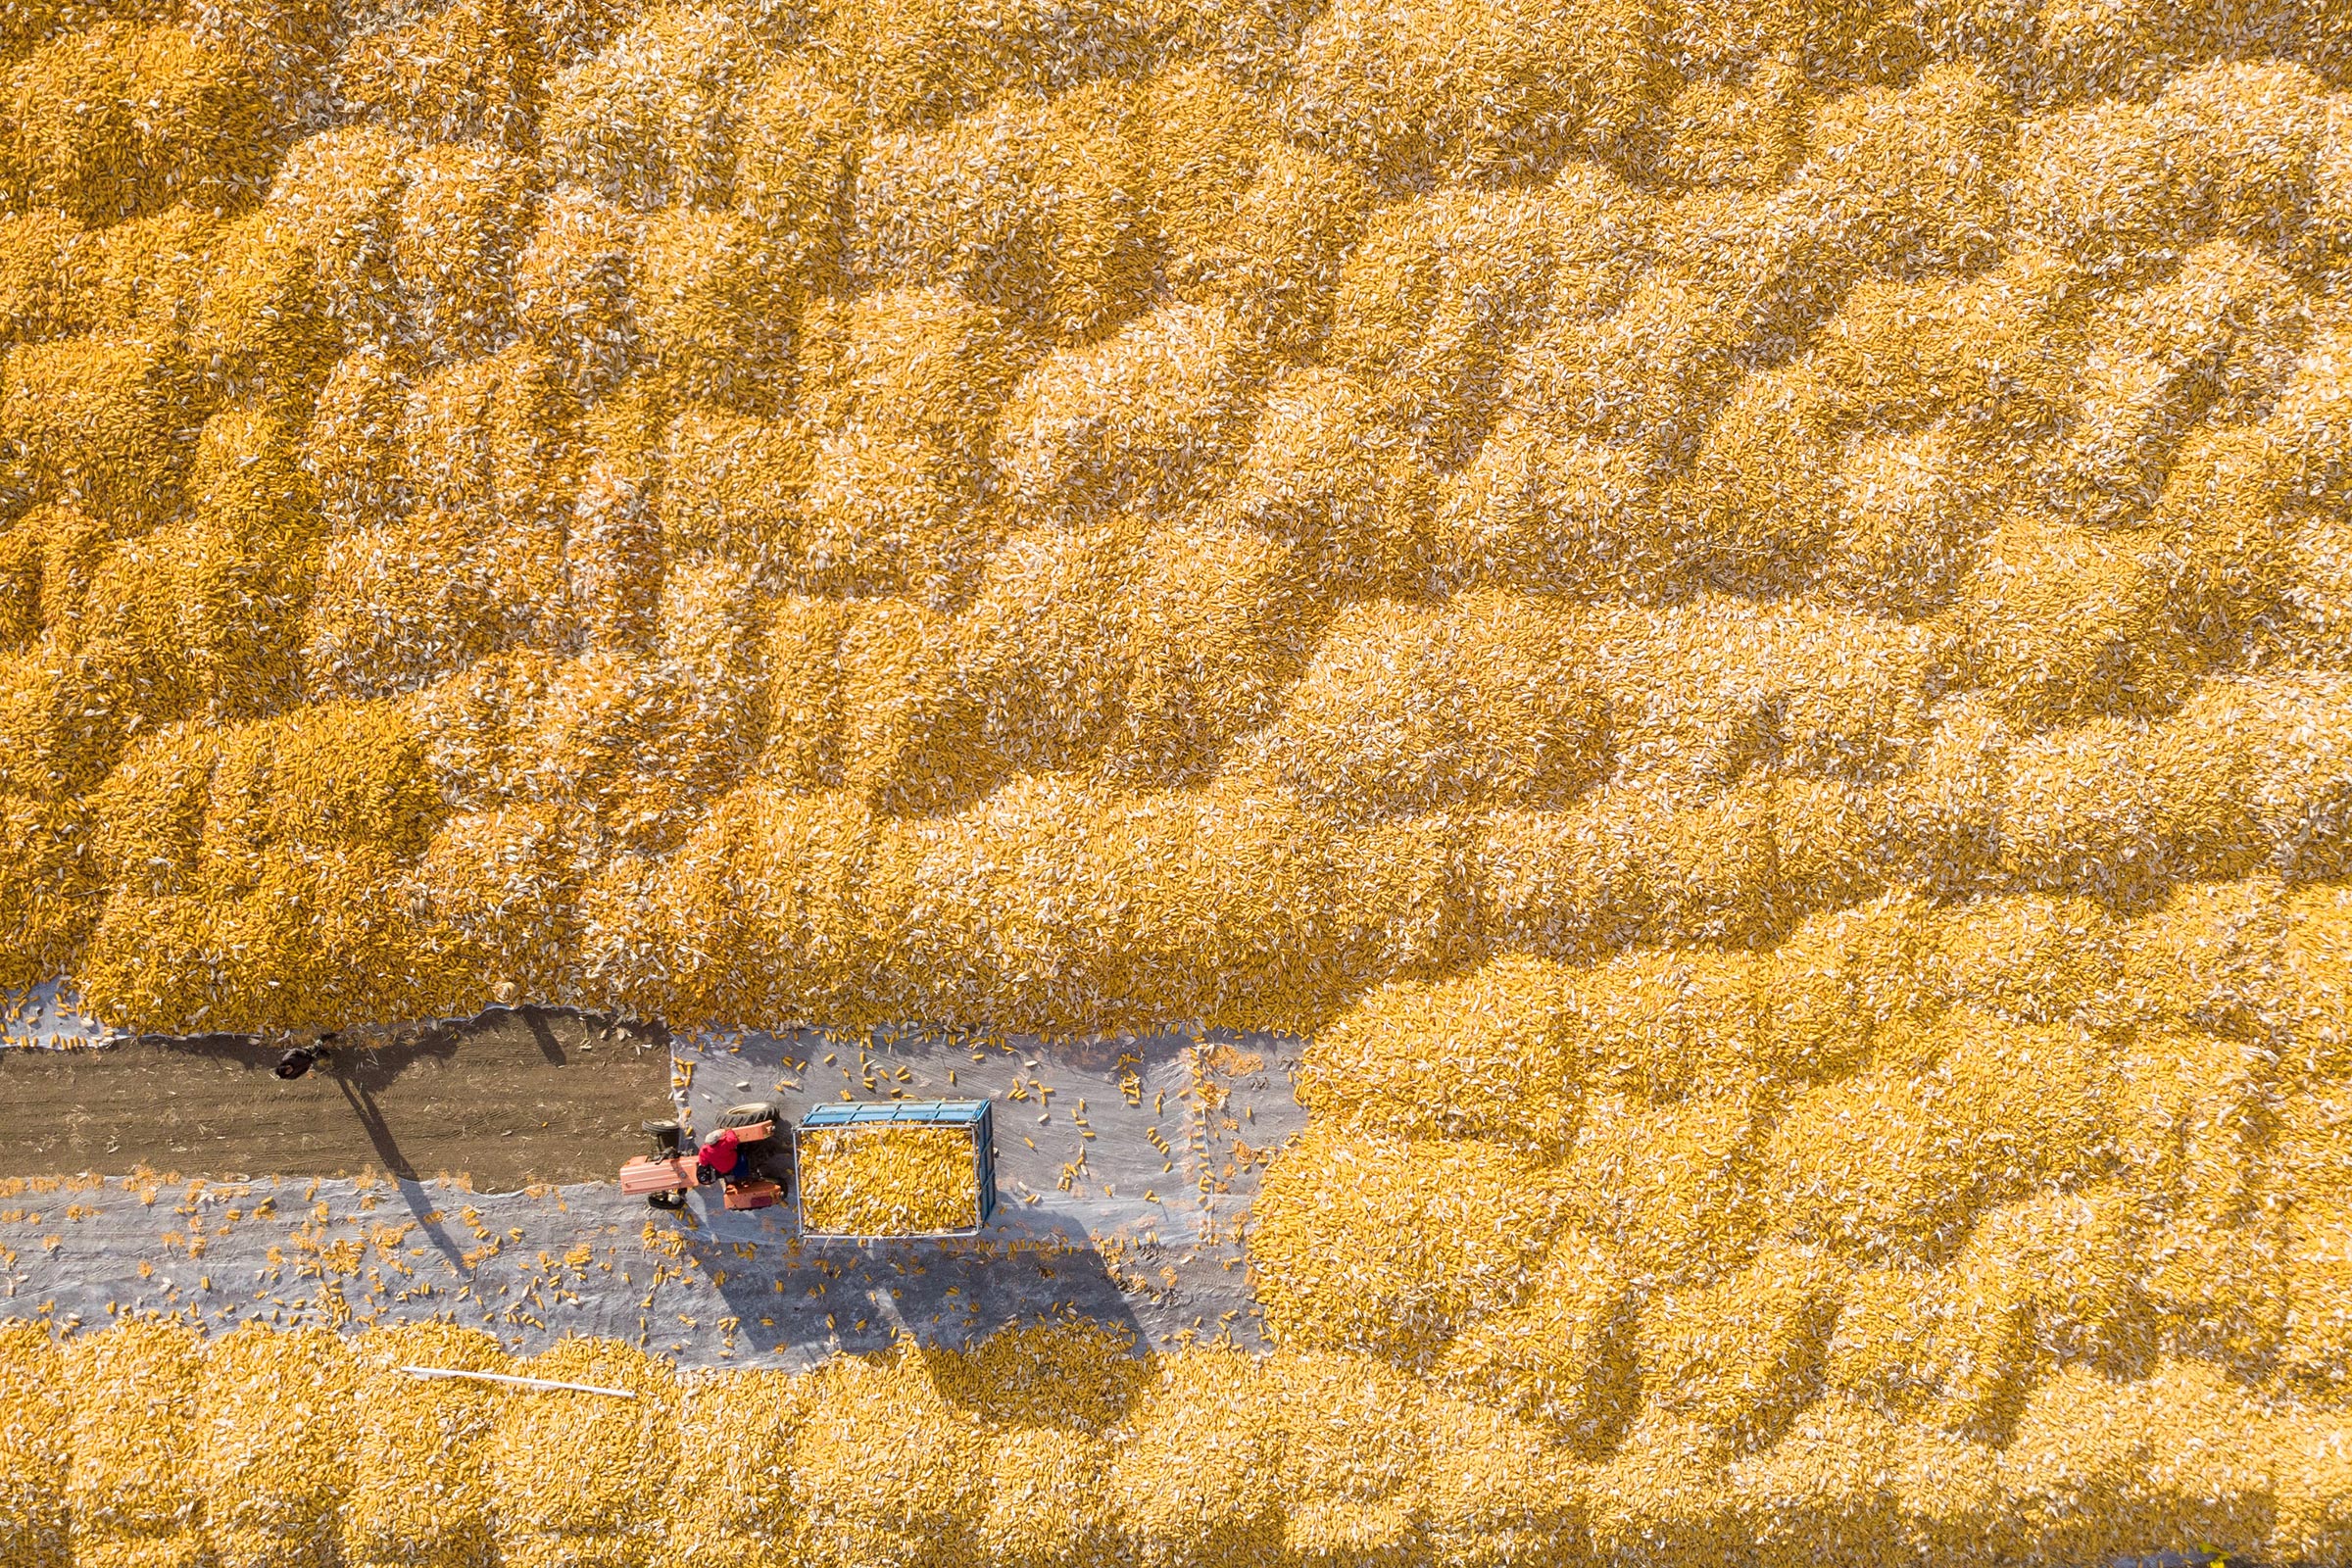 A farmer unloads corn to be dried in China’s Heilongjiang province. (Xie Jianfei—Xinhua/Getty Images)